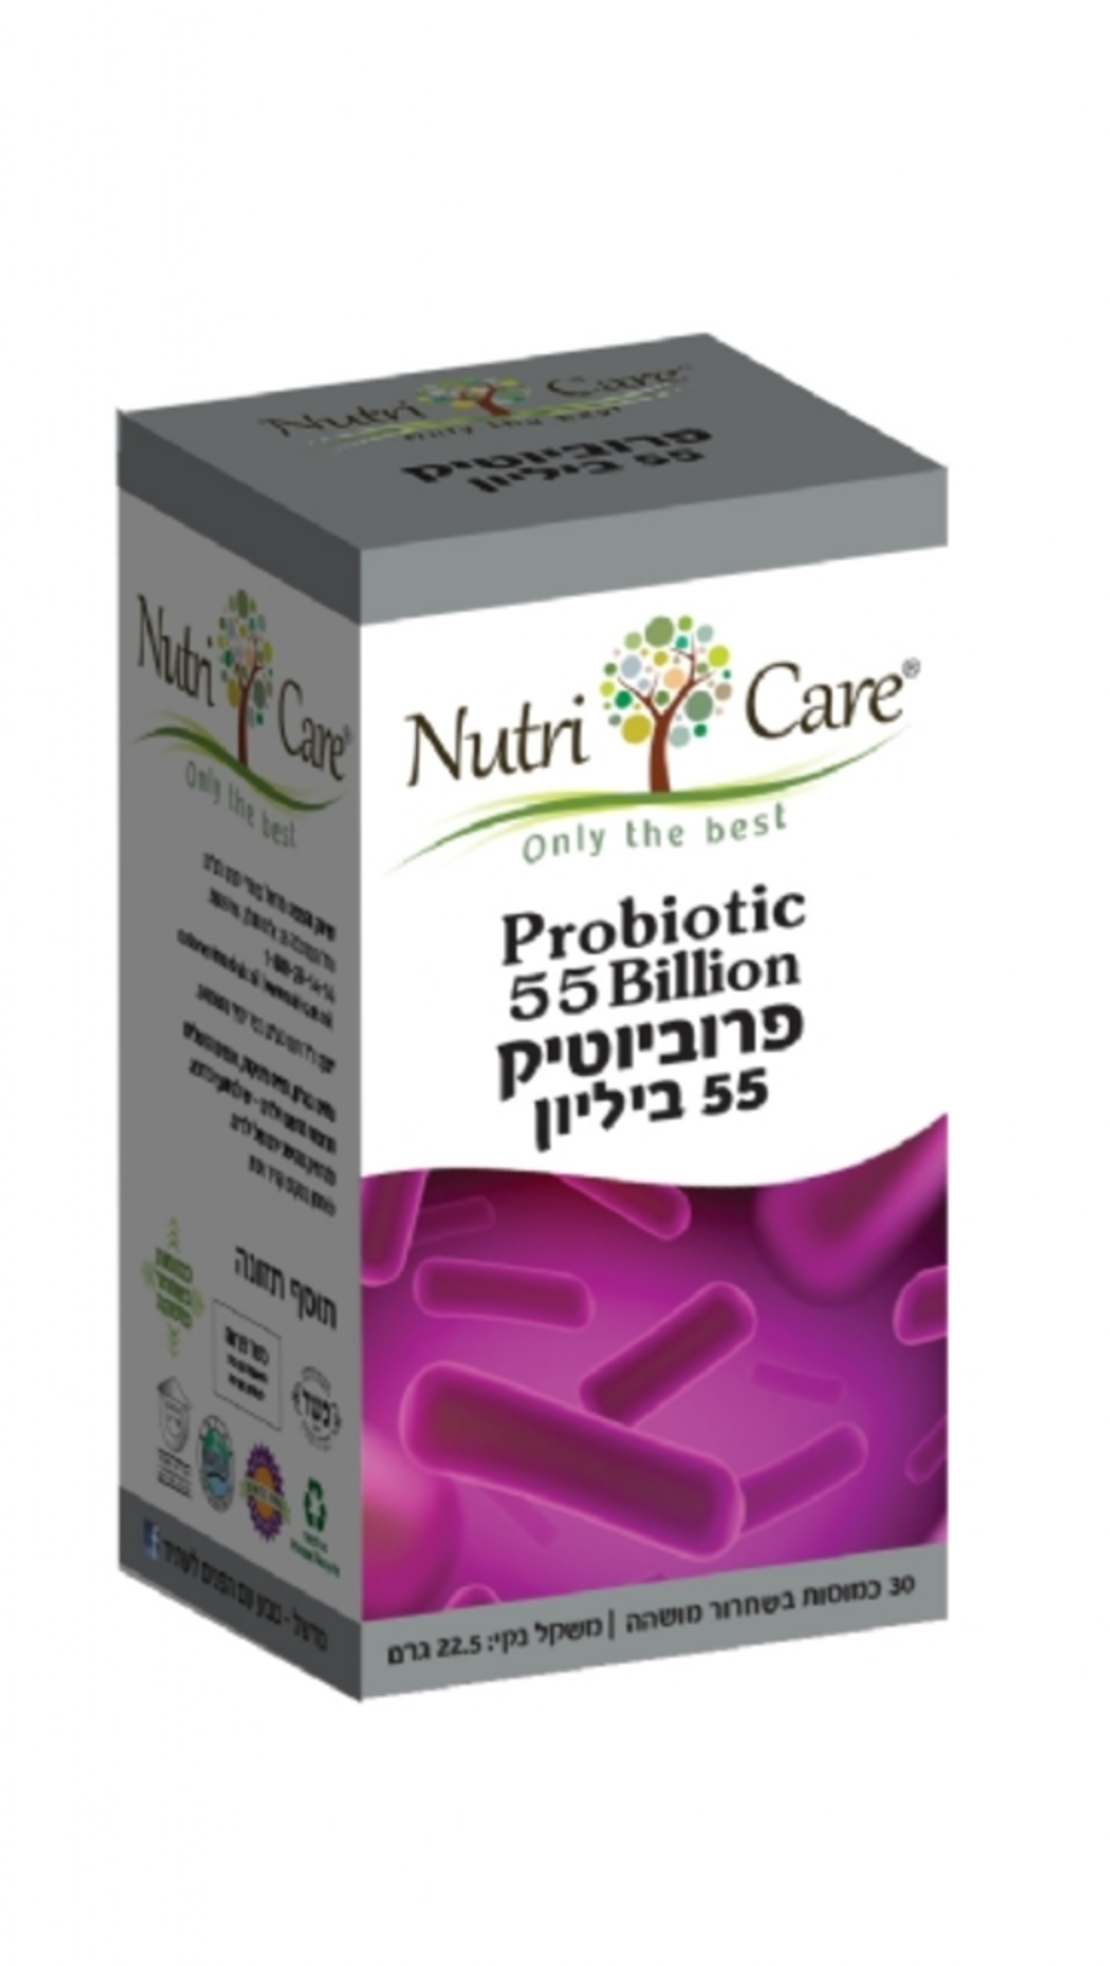 נוטרי קר - פרוביוטיקה 55 ביליון | Nutri care | Probiotic 55 Billion